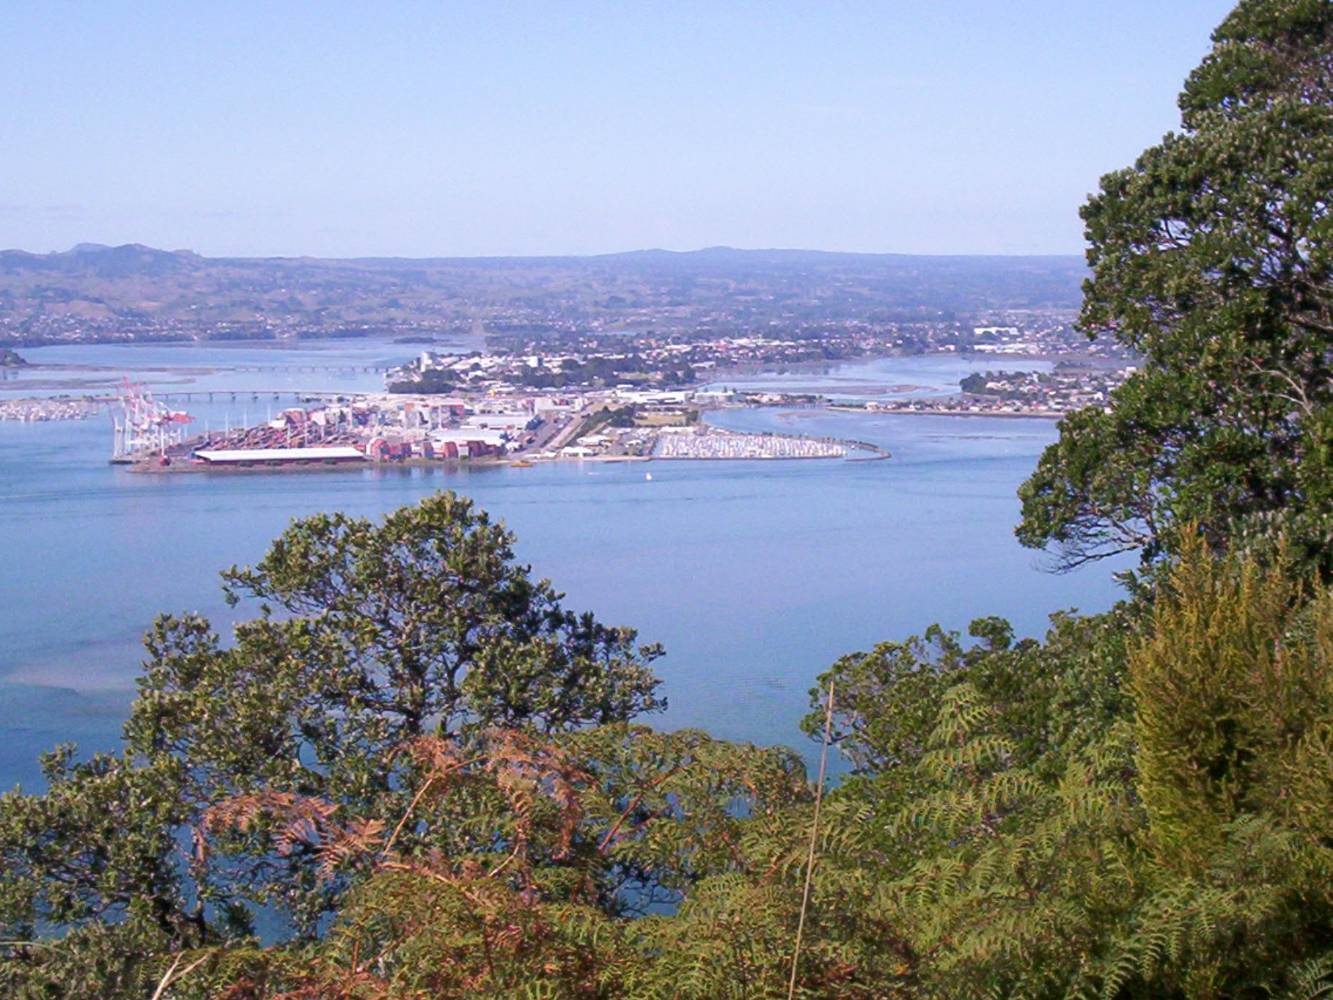 Tauranga harbour and Kaimai ranges that surround Tauranga